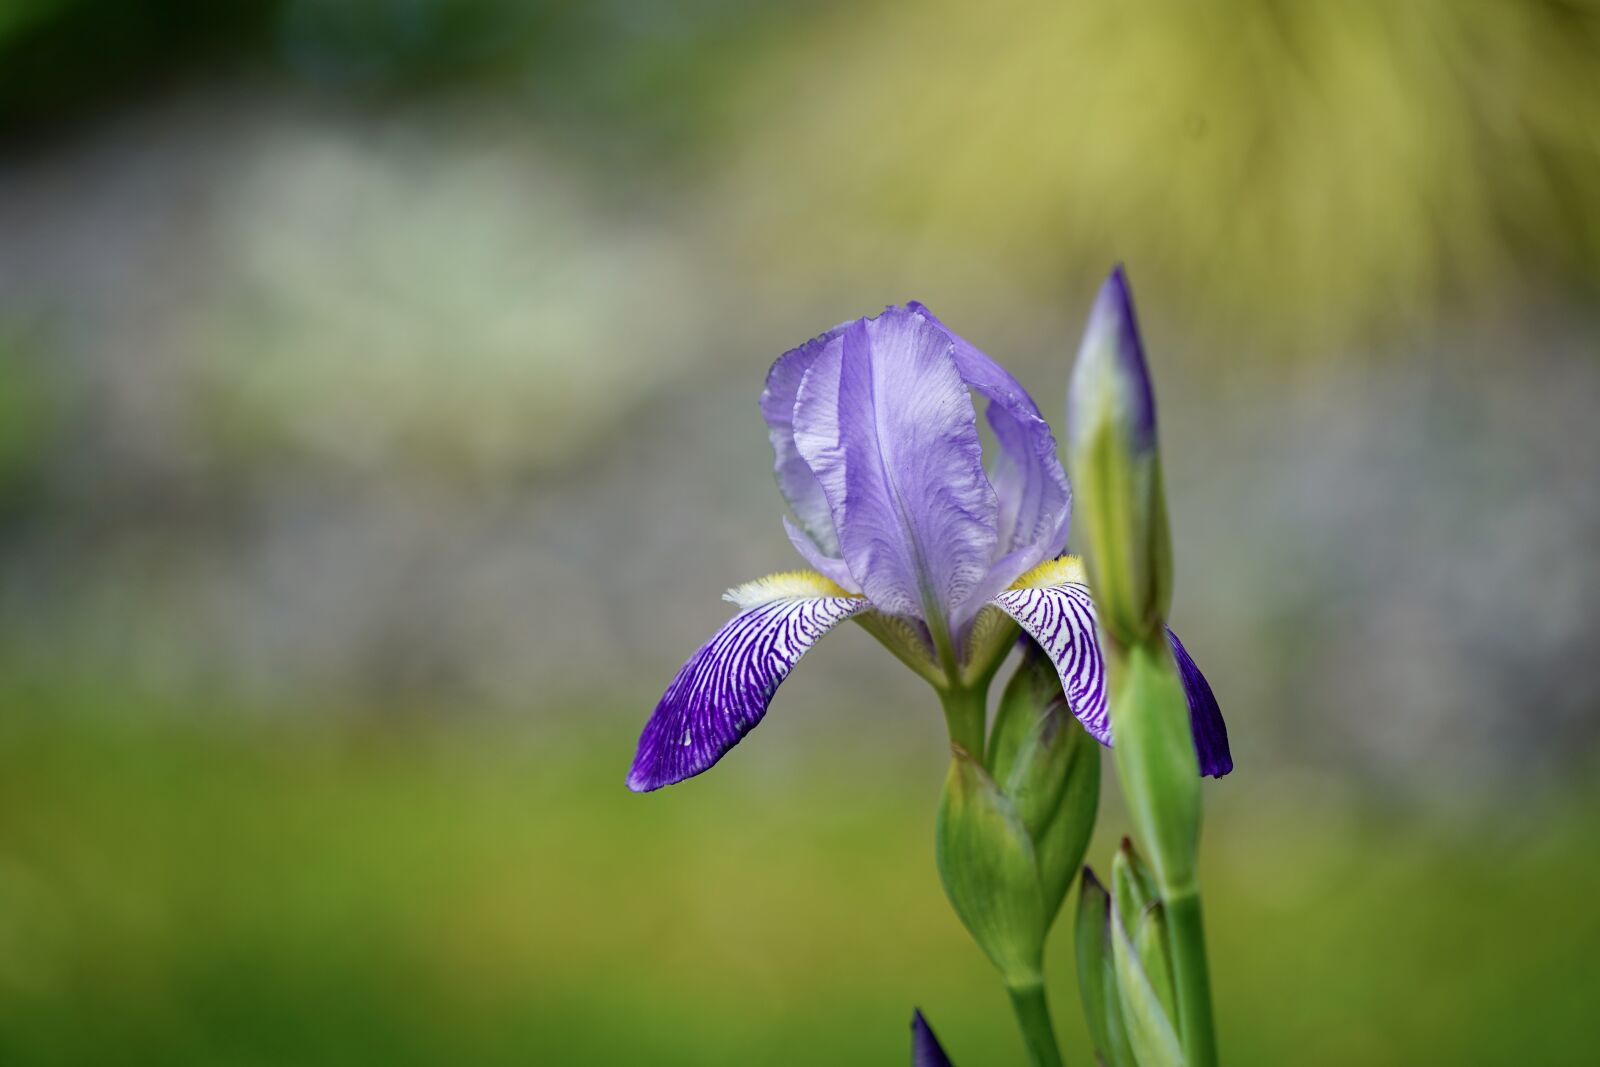 Sony FE 70-200mm F4 G OSS sample photo. Iris, iris flower, flower photography